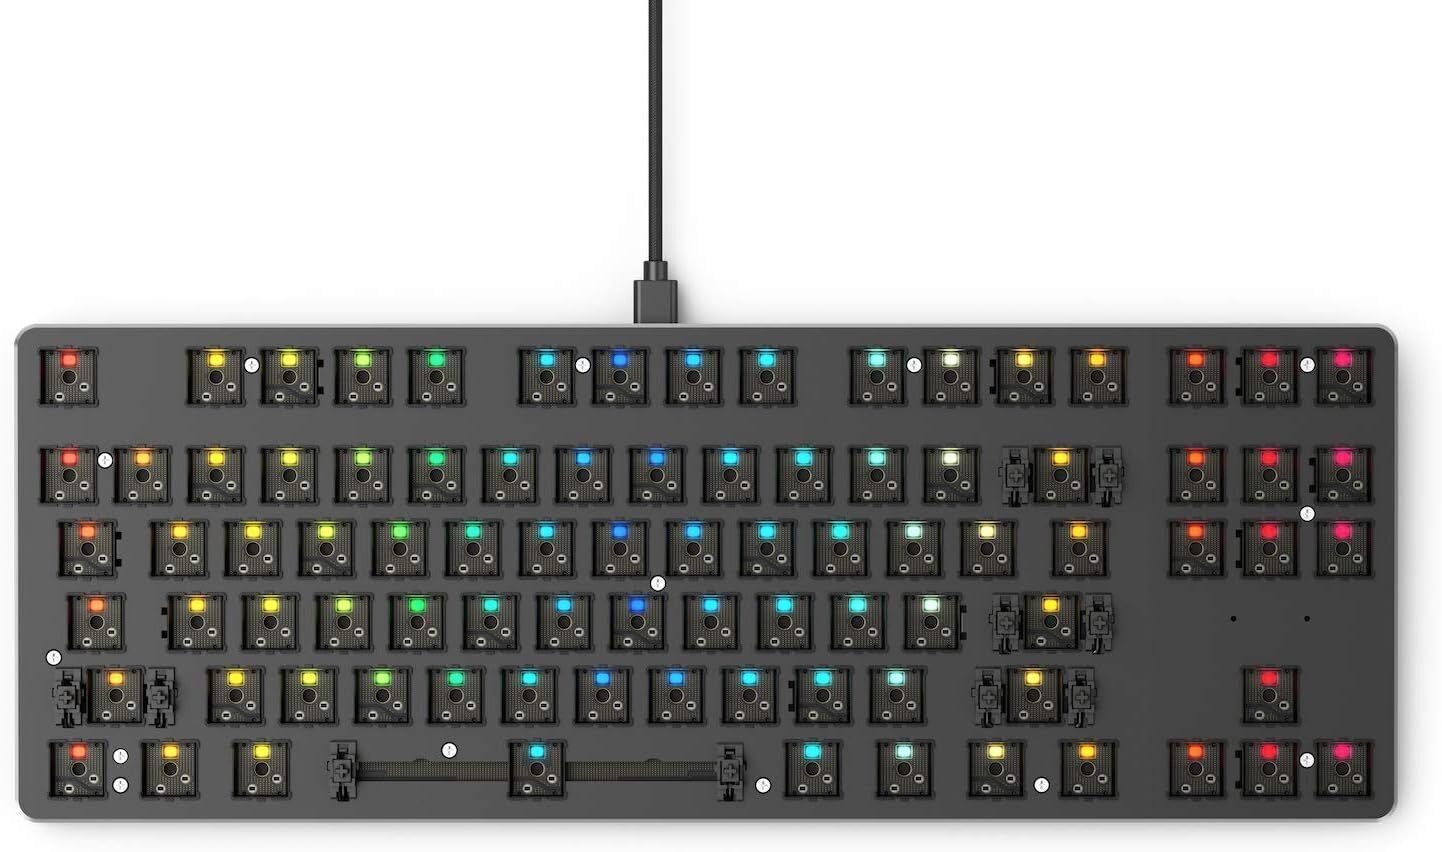 Glorious Custom Gaming Keyboard - GMMK 85% percent TKL Barebone Mechanical